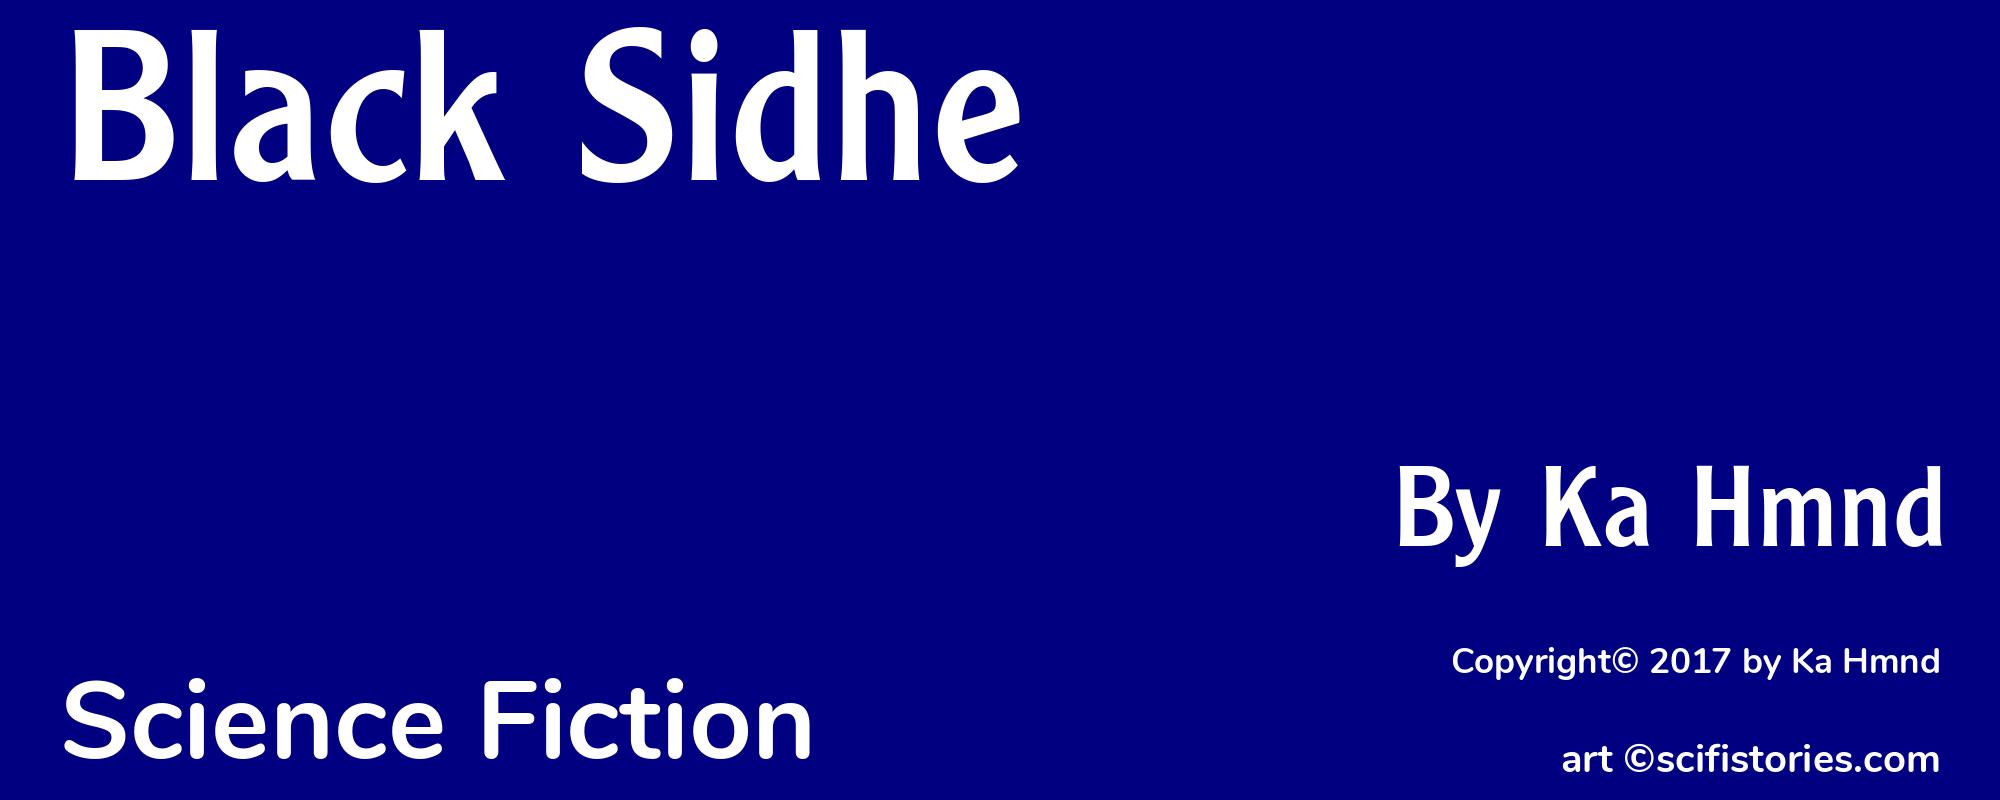 Black Sidhe - Cover